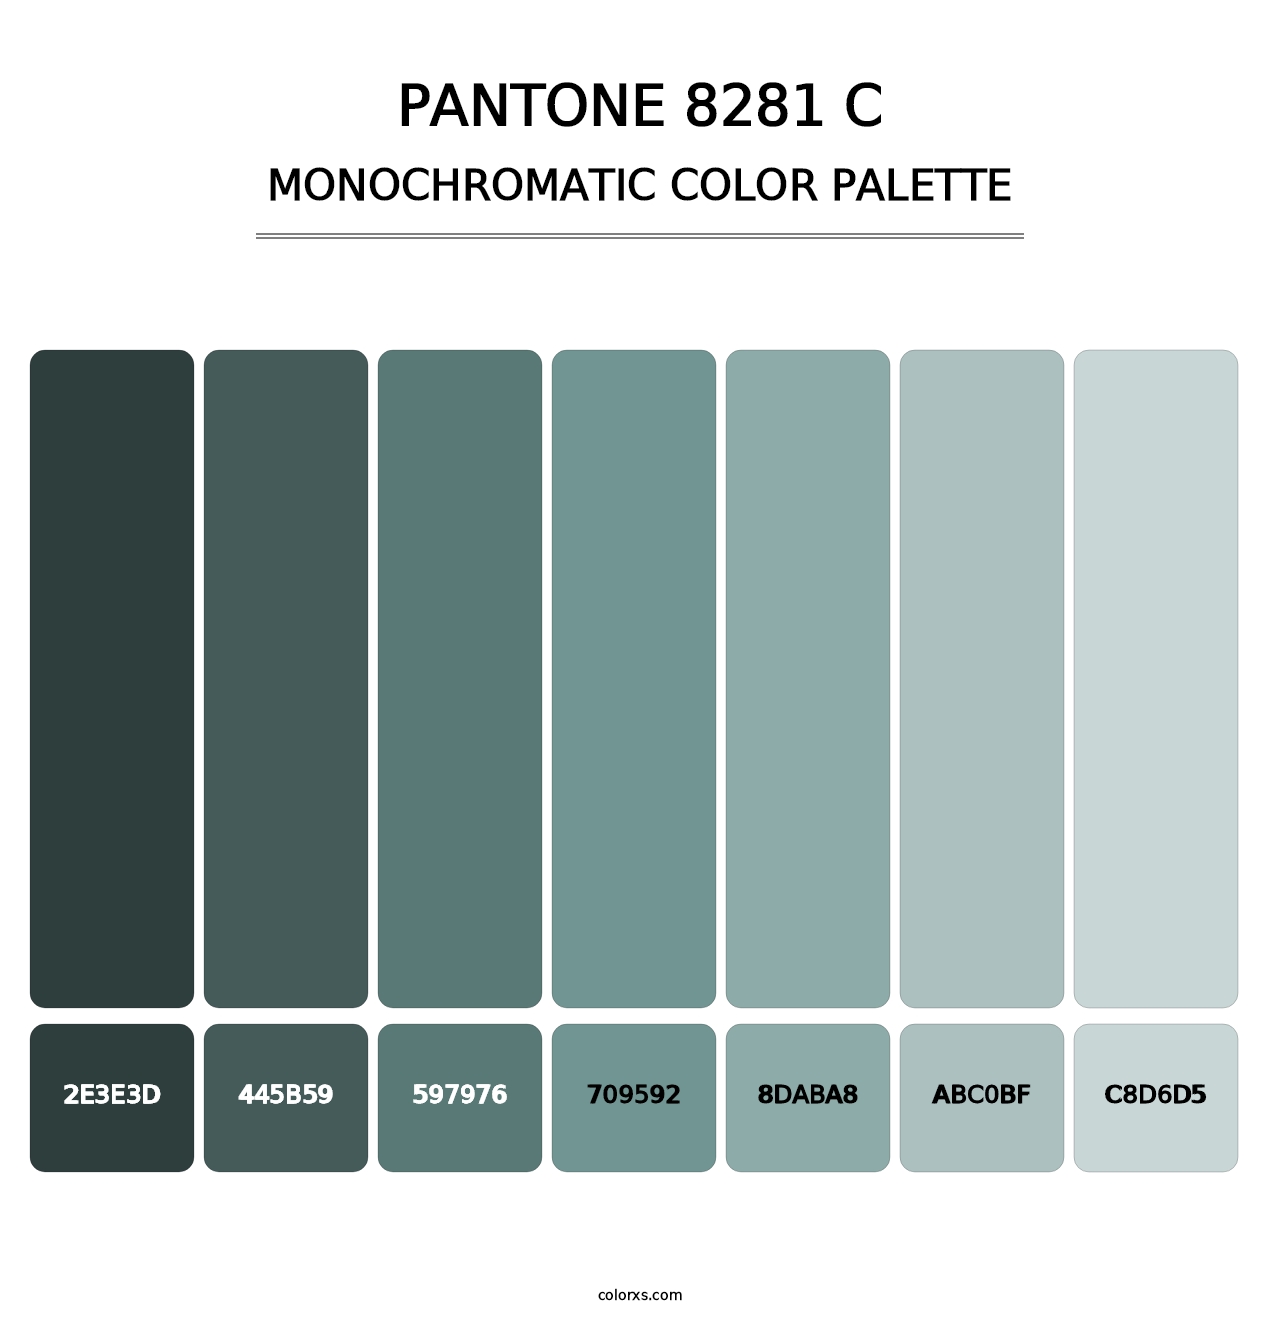 PANTONE 8281 C - Monochromatic Color Palette